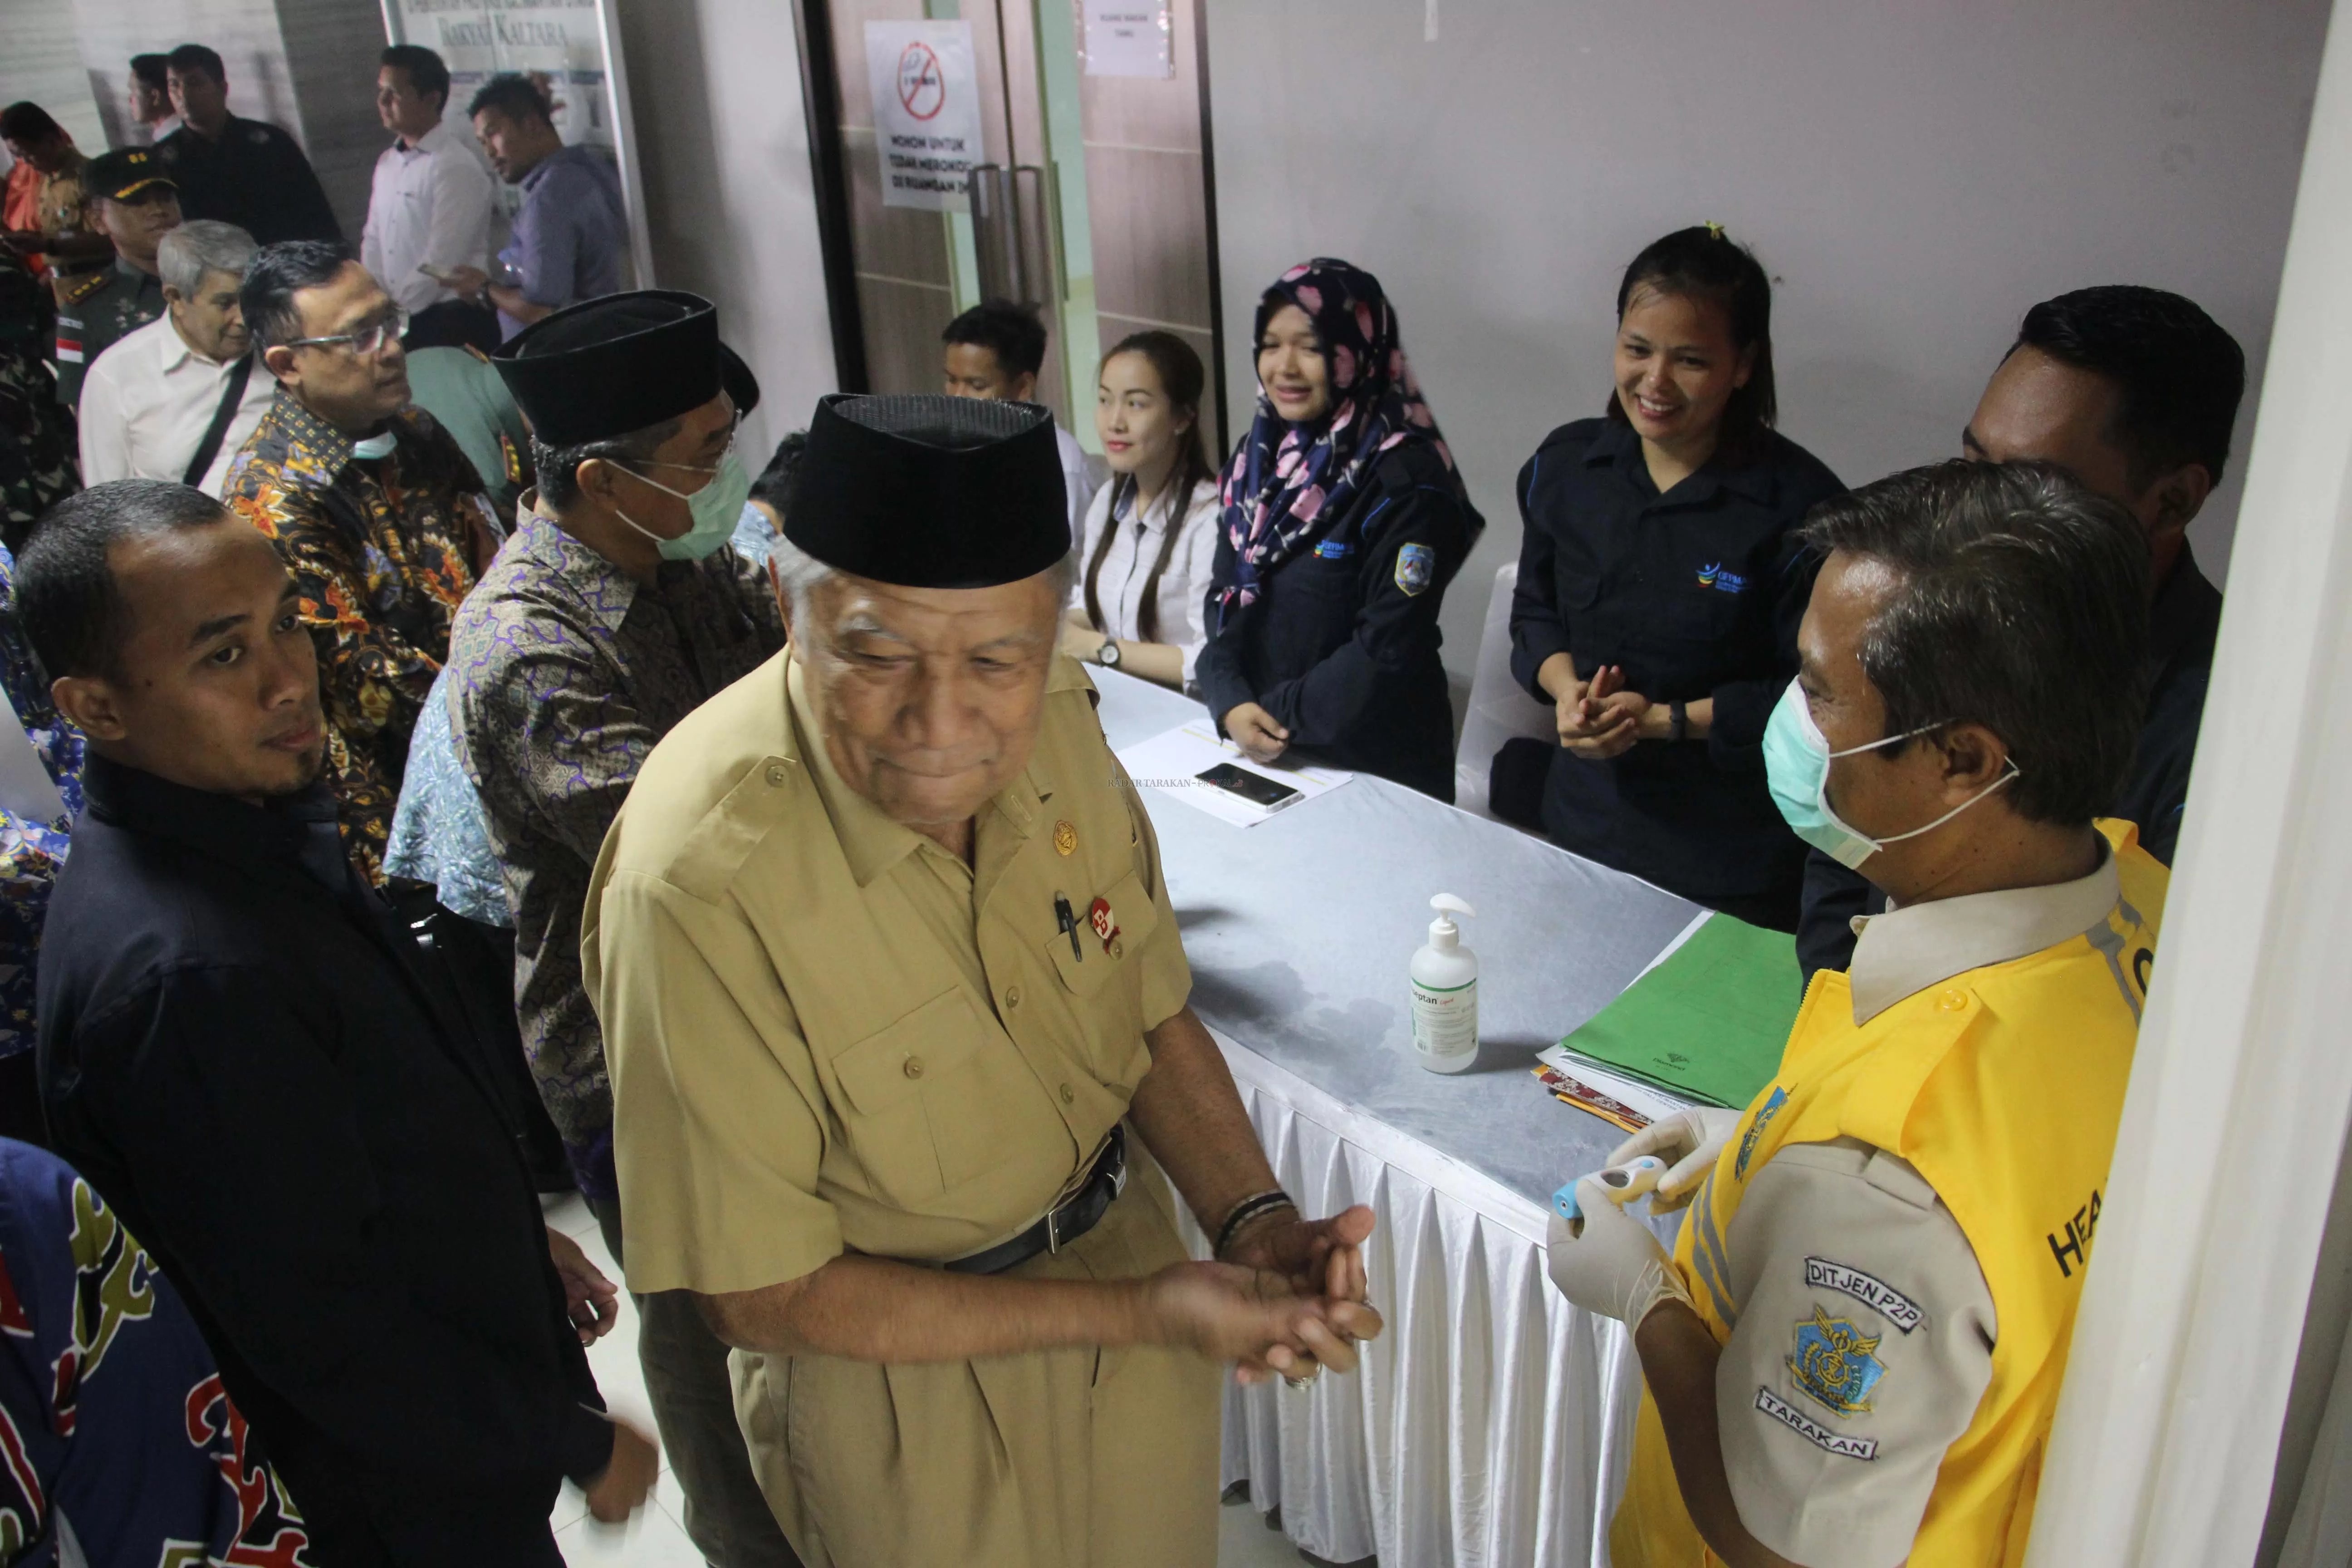 DICEK KESEHATANNYA: Wakil Gubernur Kaltara H. Udin Hianggio saat akan memasuki ruangan rakor antisipasi penyebaran pandemi Covid-19 di Tanjung Selor, Selasa (17/3).